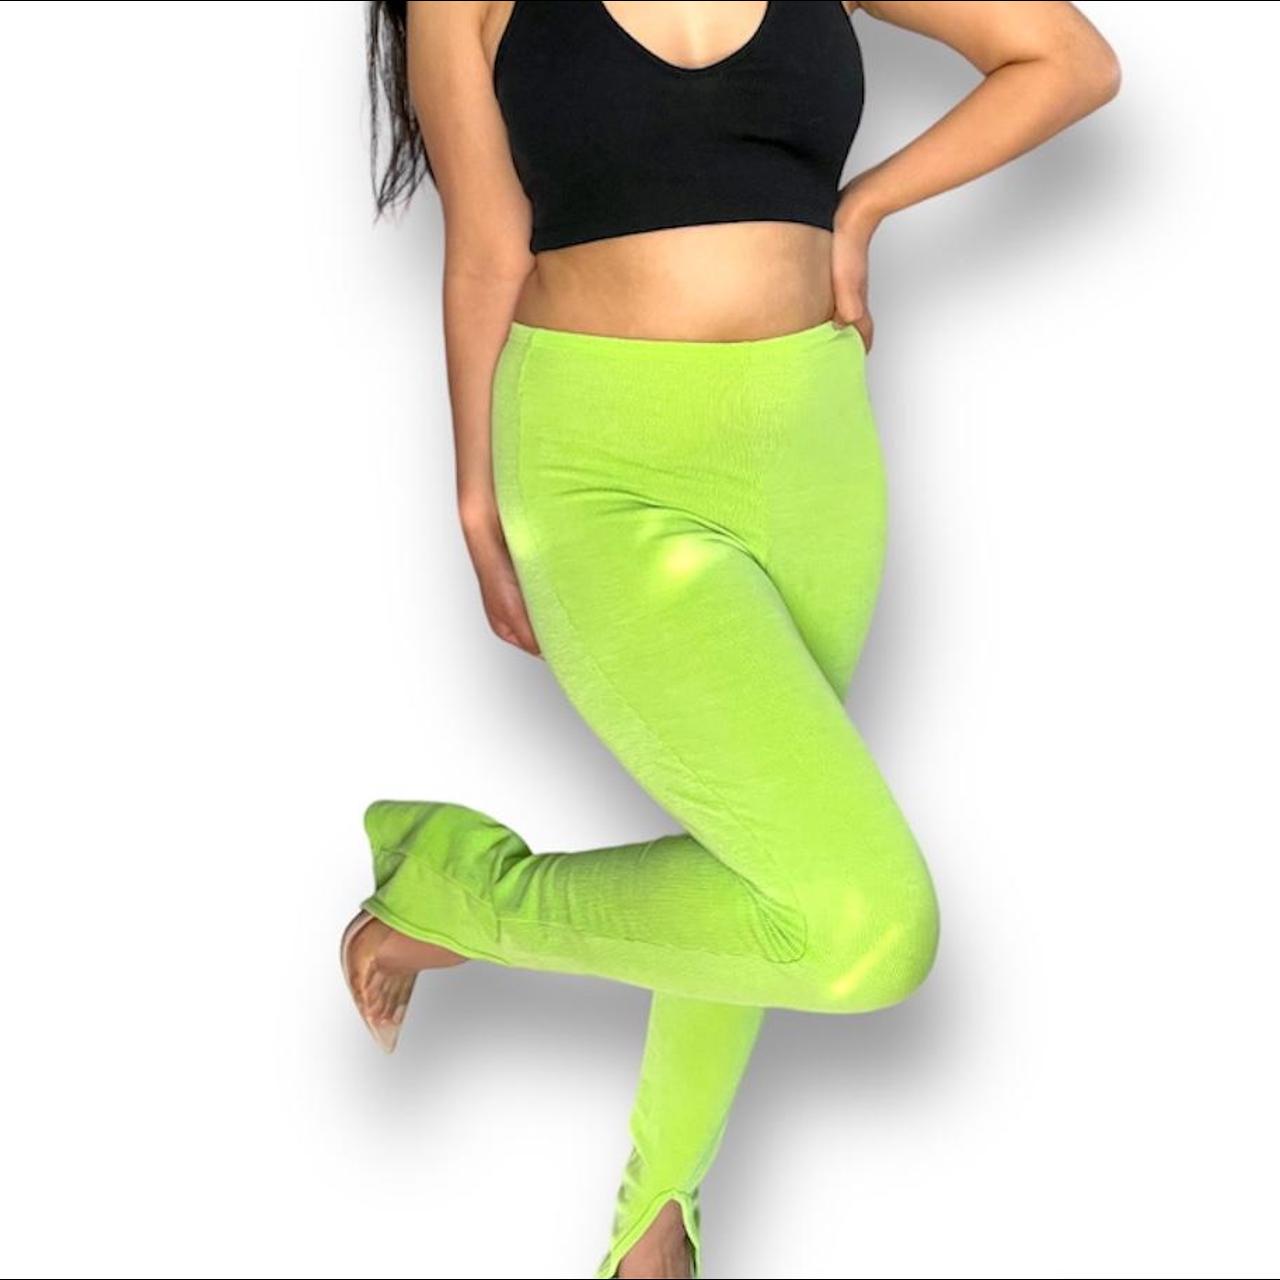 Lime green split hem leggings •very soft and - Depop